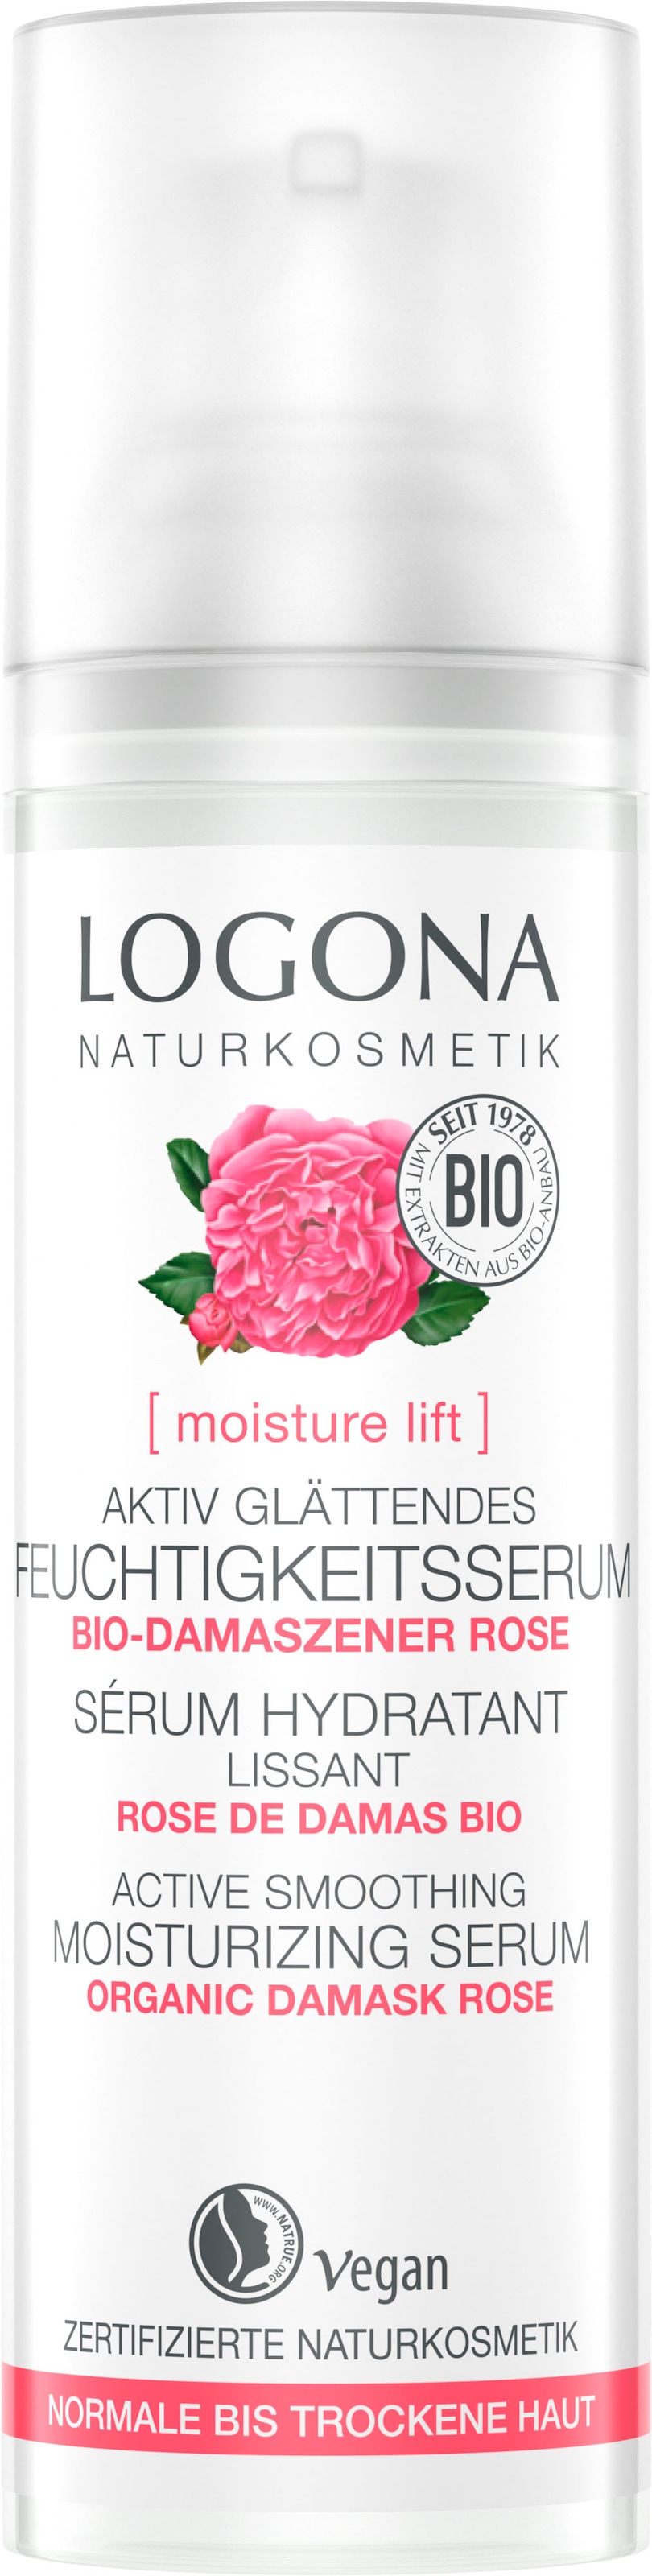 lift glätt LOGONA online Gesichtsserum »Logona BAUR kaufen moisture | Feuchtigk.serum«